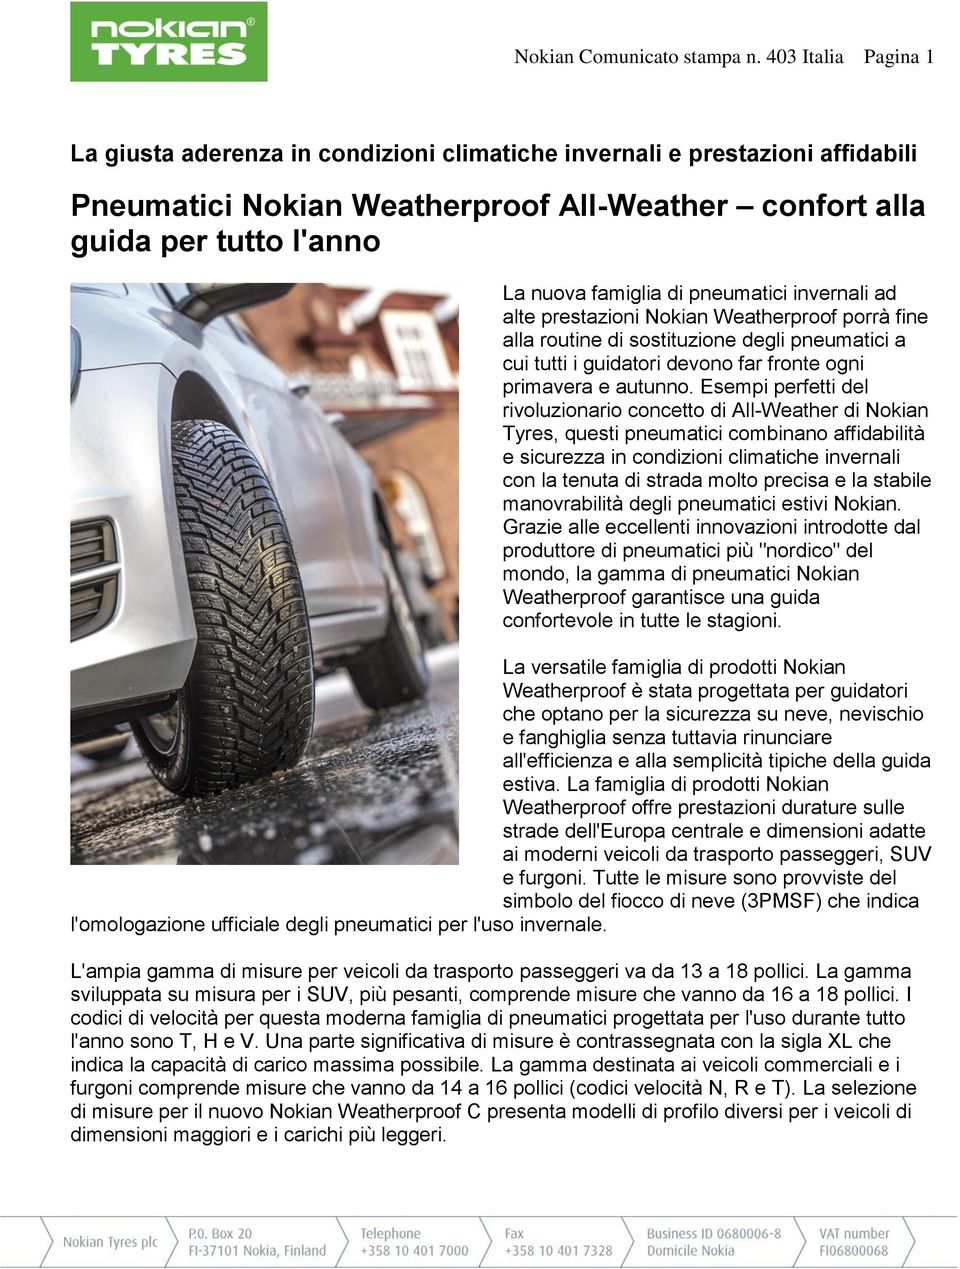 pneumatici invernali ad alte prestazioni Nokian Weatherproof porrà fine alla routine di sostituzione degli pneumatici a cui tutti i guidatori devono far fronte ogni primavera e autunno.